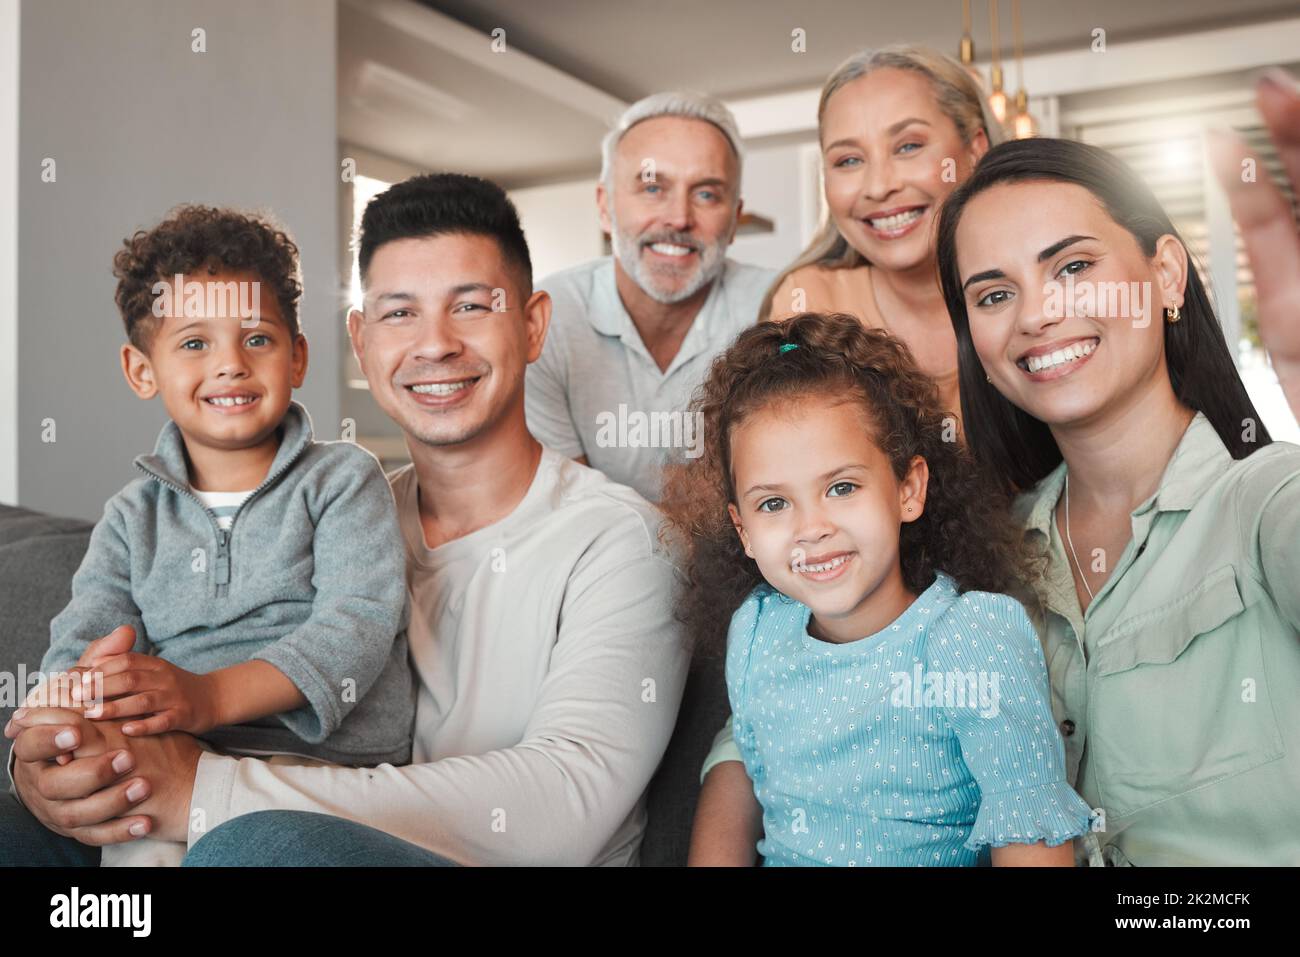 Eine Bilderfamilie. Aufnahme einer Familie, die zu Hause ein Selfie gemacht hat. Stockfoto